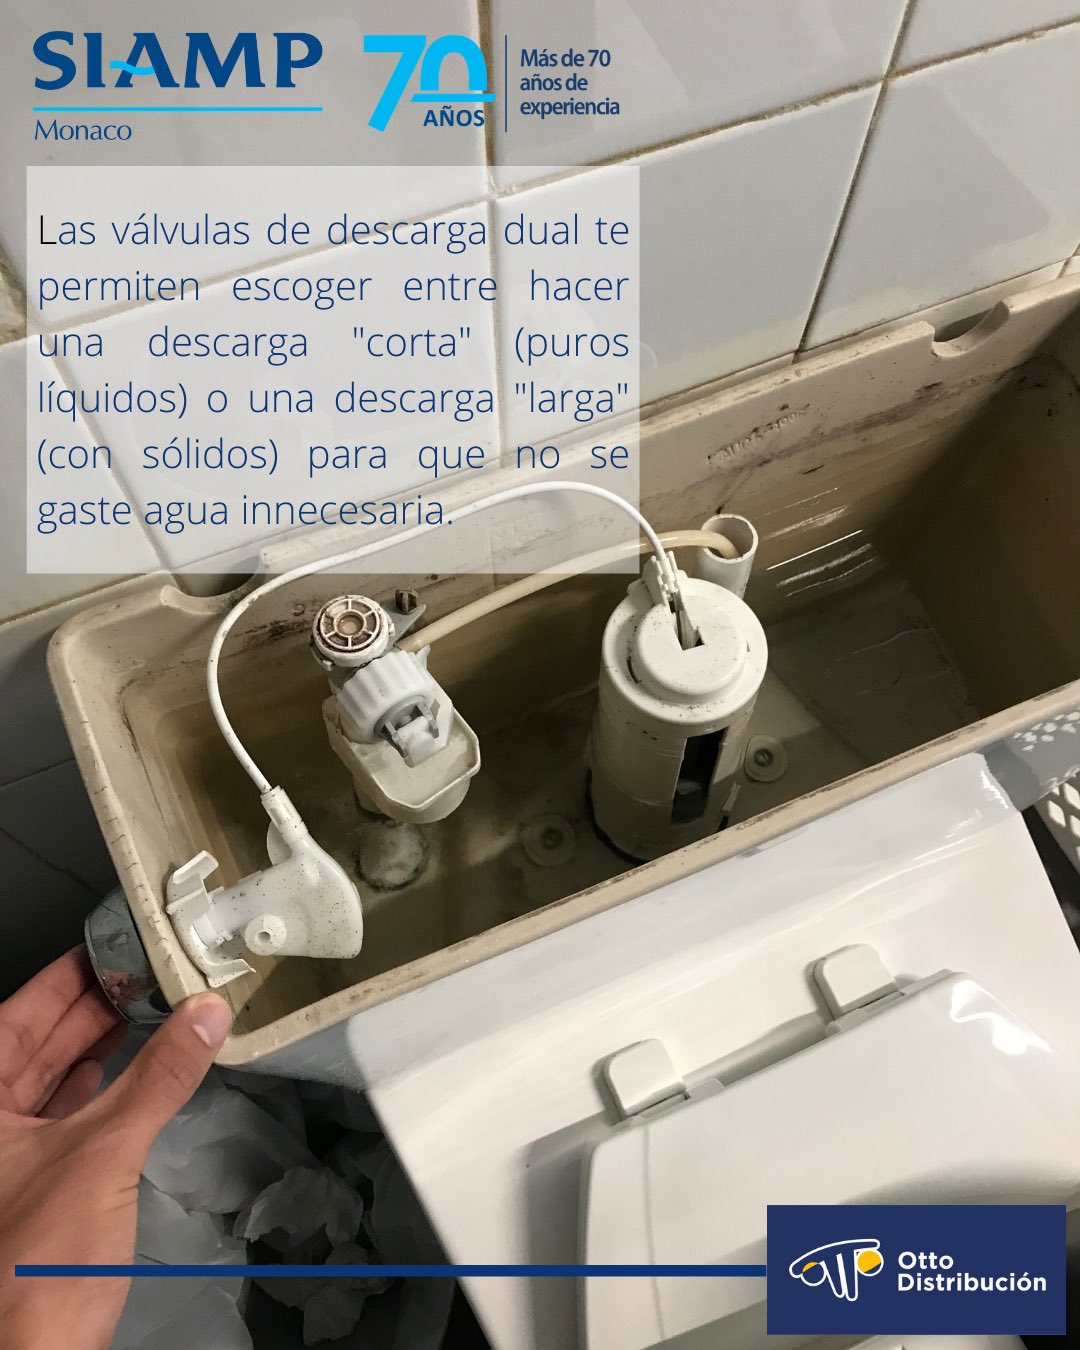 OttoDist on X: Las válvulas duales para WC te permiten controlar el  volumen de agua que consume un inodoro en cada descarga. Esto permite  ahorrar un gran porcentaje de agua cada vez